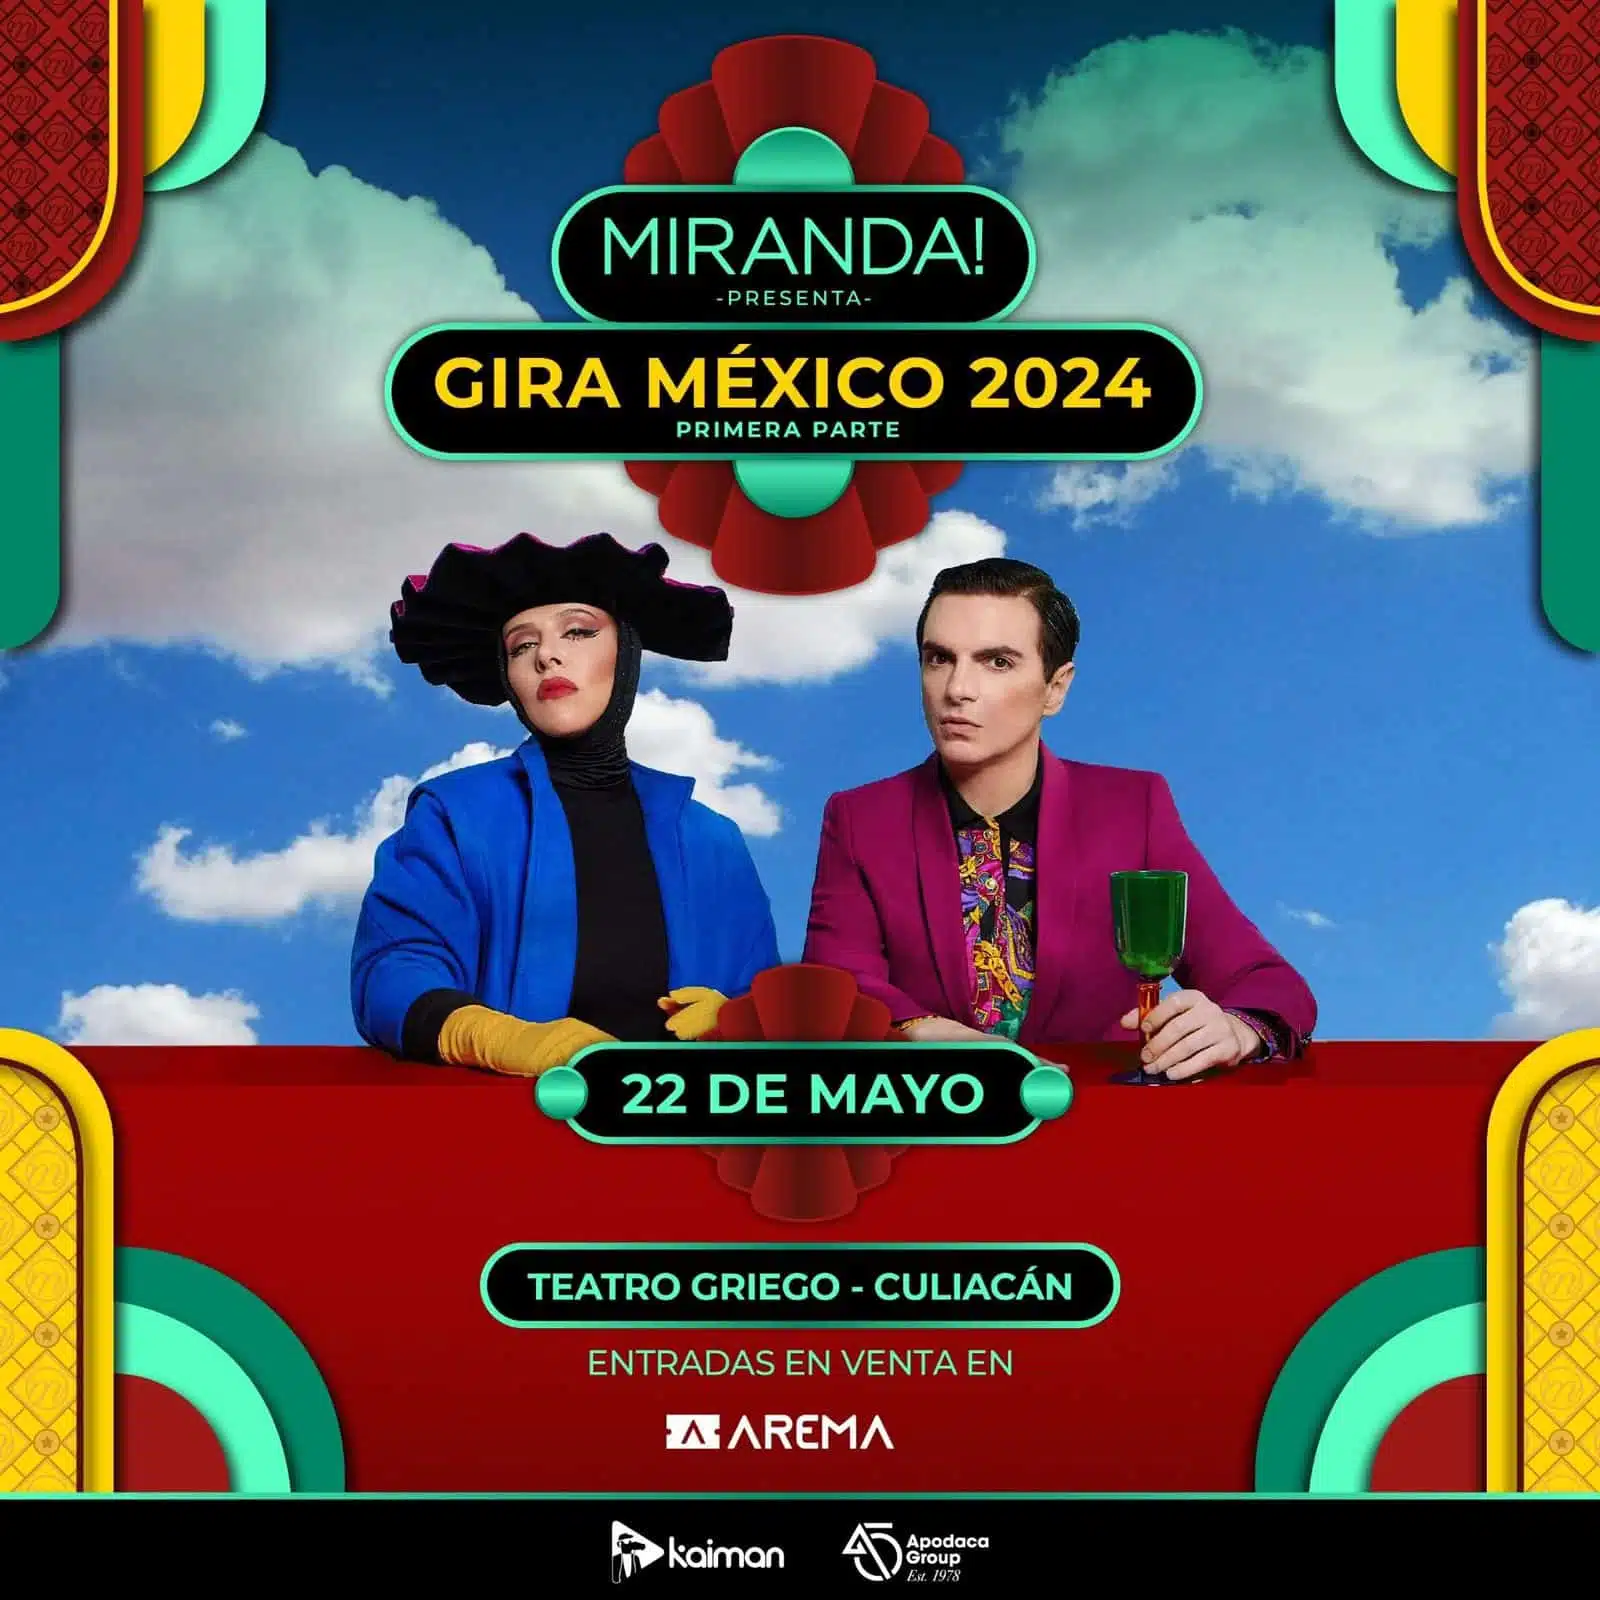 Cartel publicitario del concierto de Miranda! en Culiacán